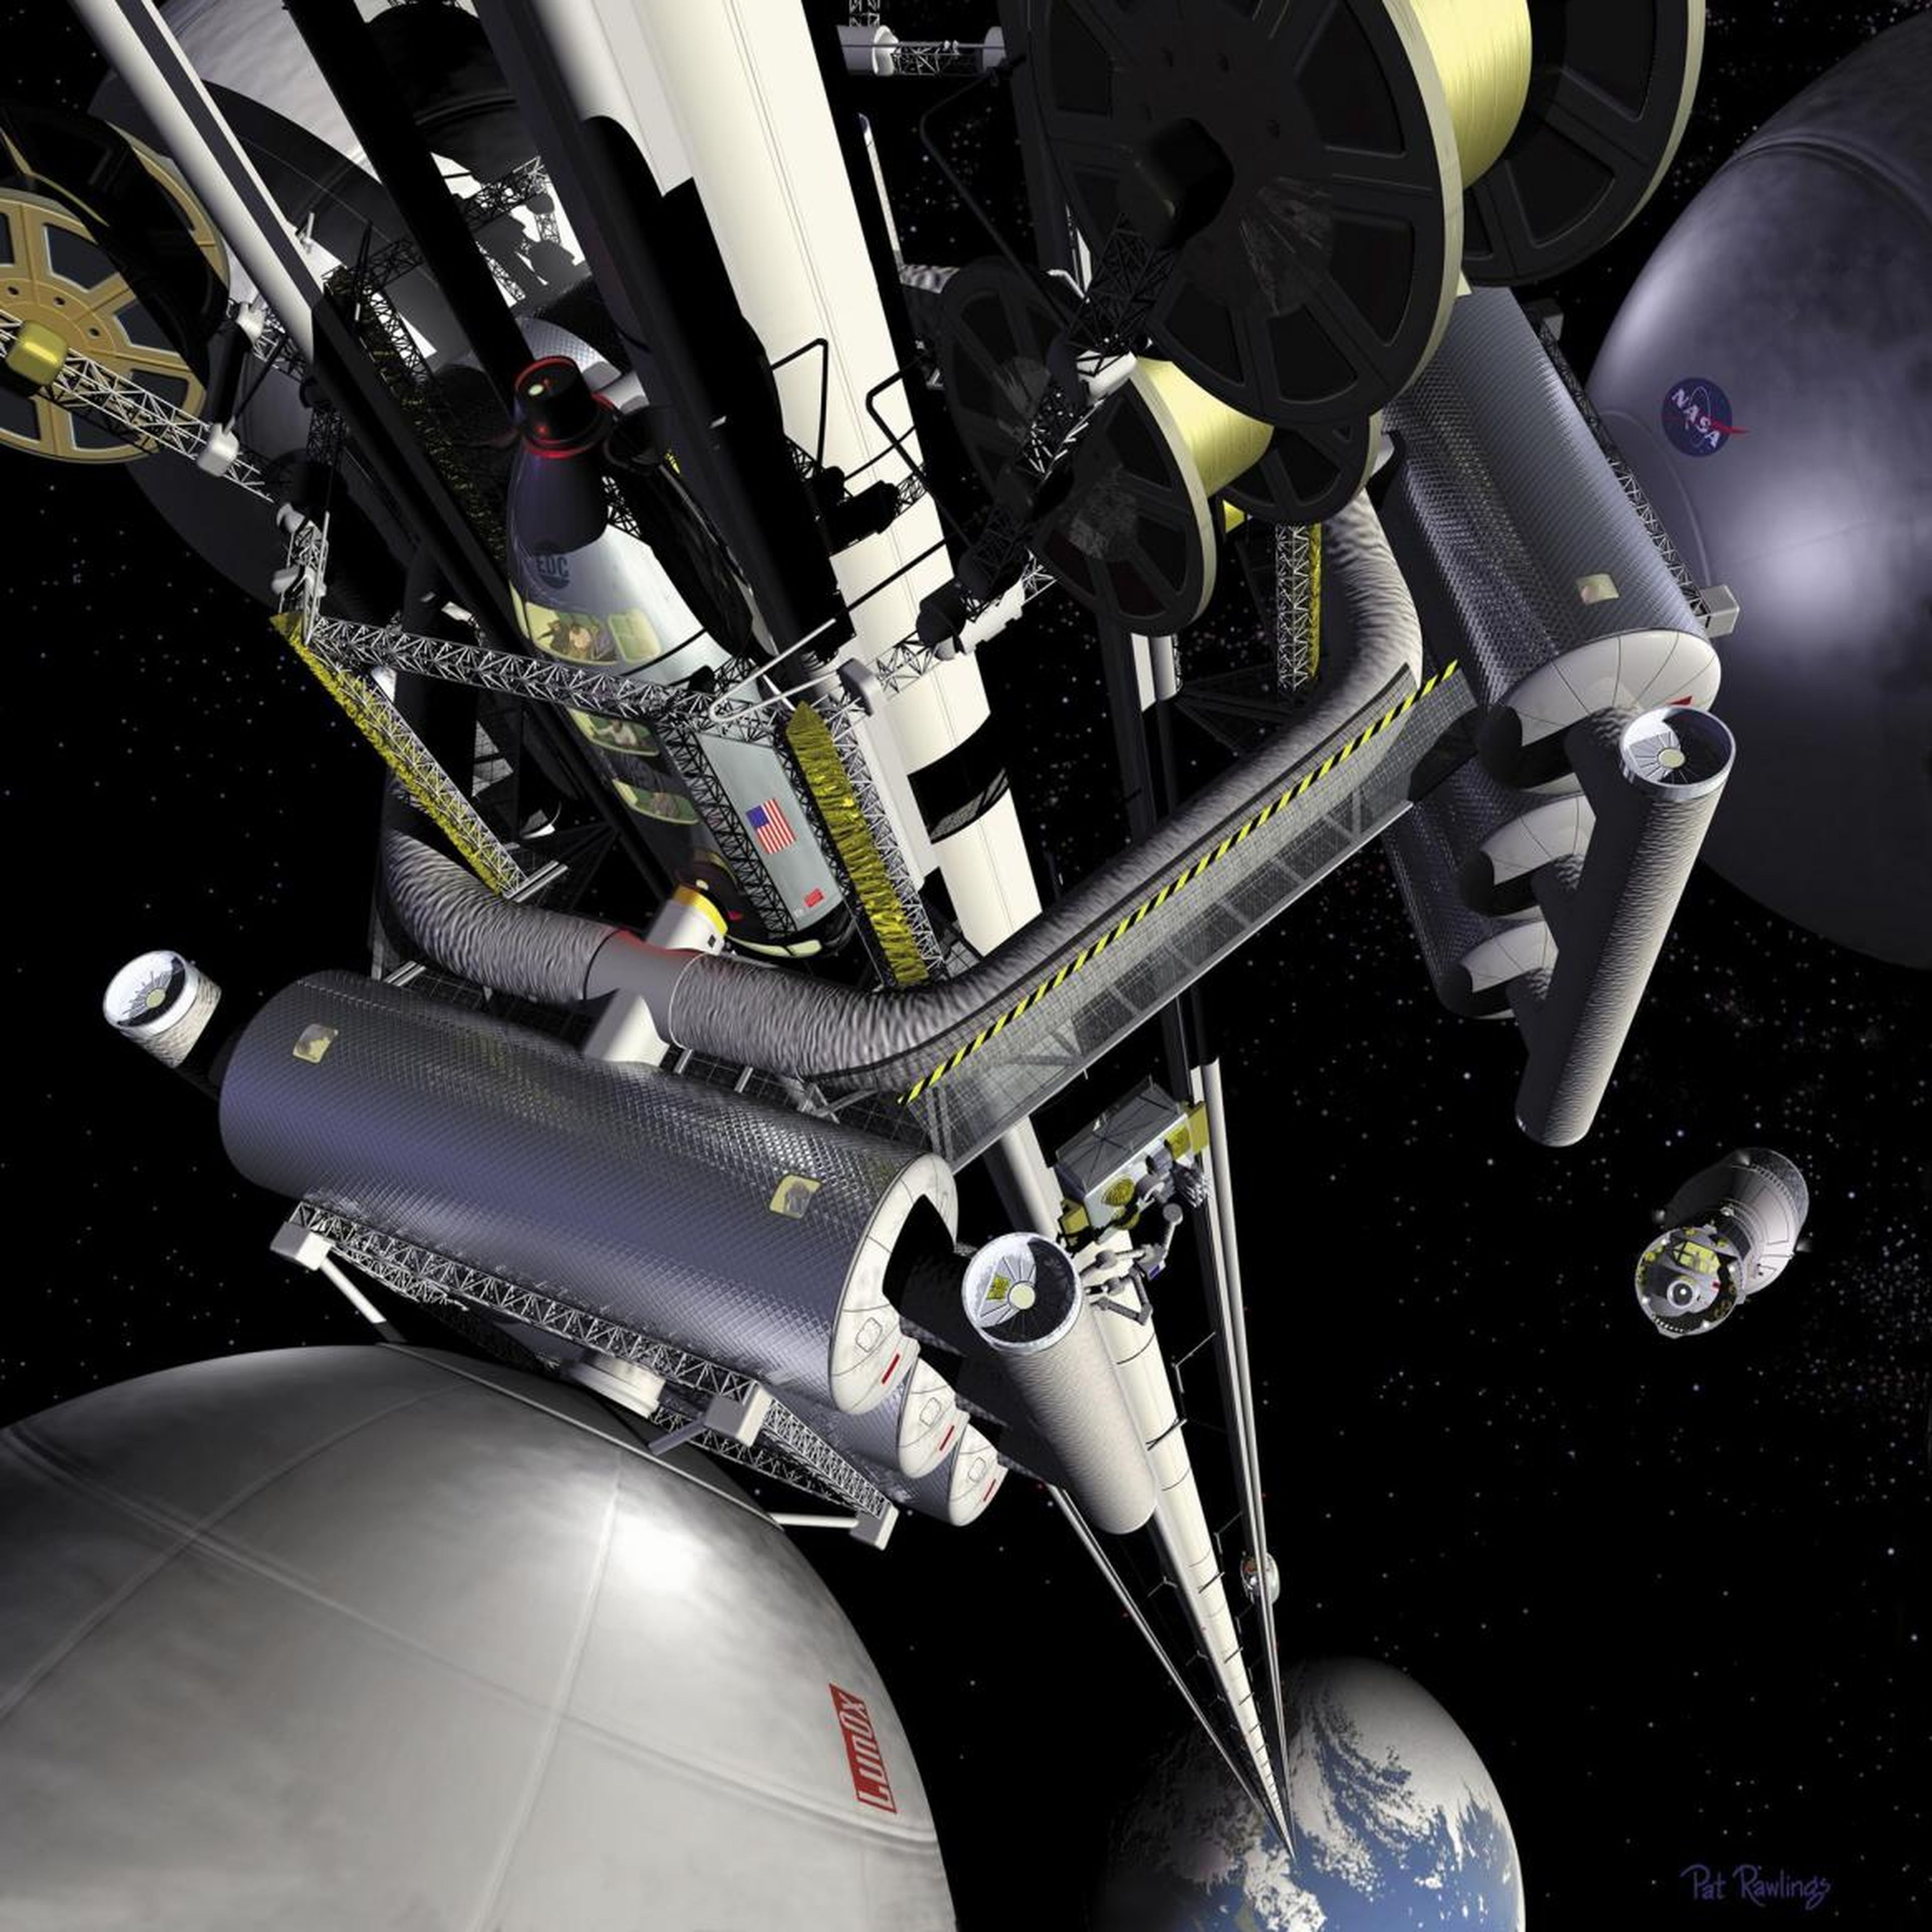 Una ilustración del artista Pat Rawling muestra el concepto de un ascensor espacial visto desde una estación de transferencia geoestacionaria, mirando hacia la Tierra.